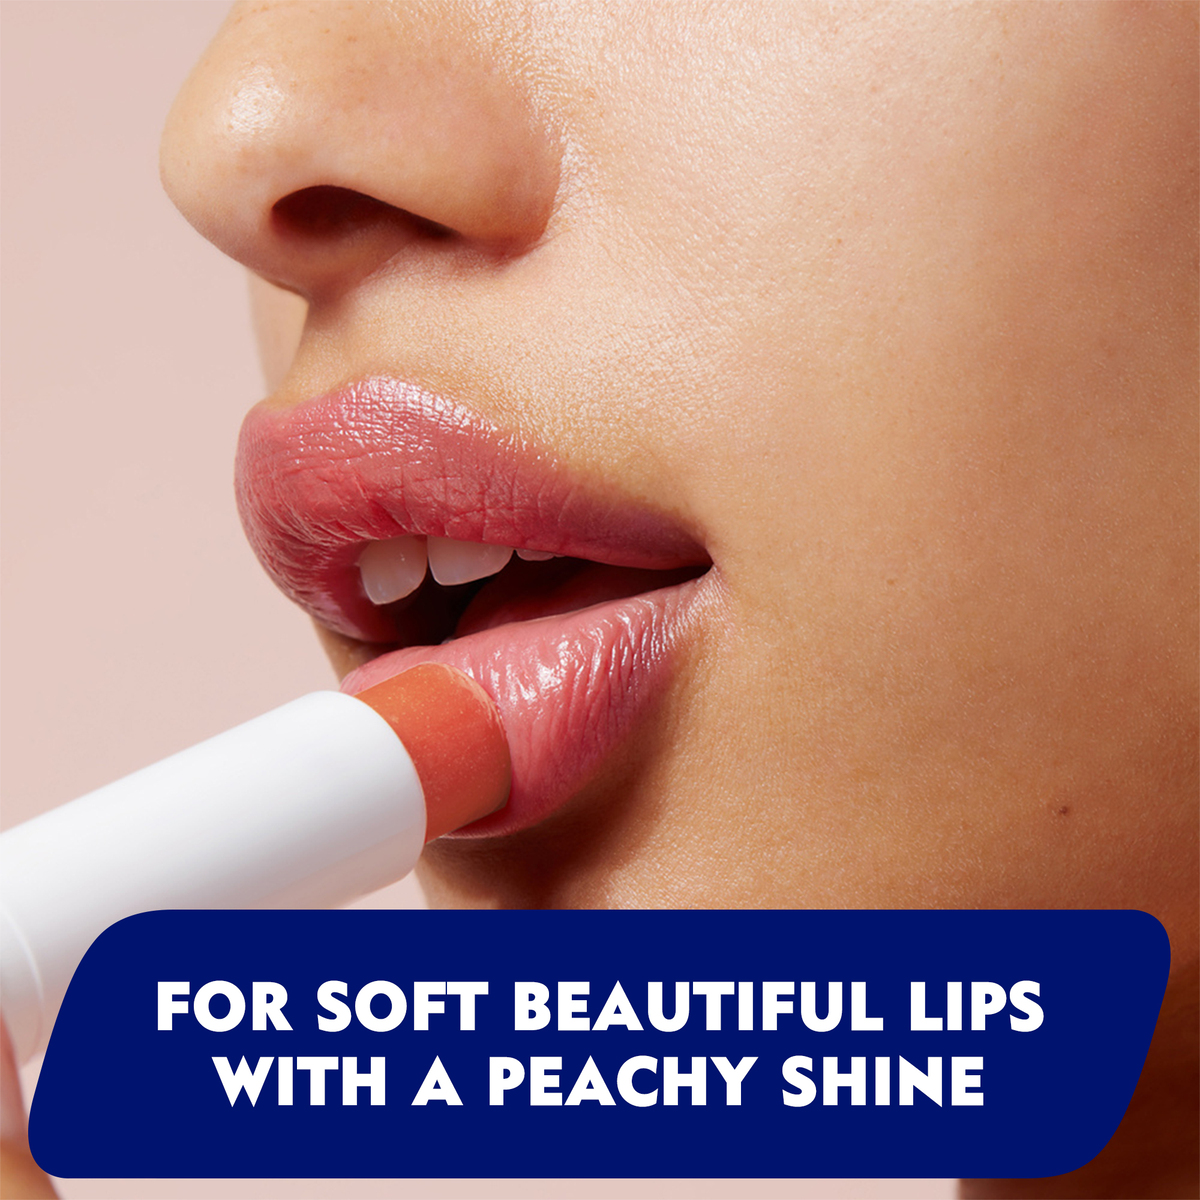 Labello Lip Balm Moisturising Lip Care Peach Shine 4.8 g